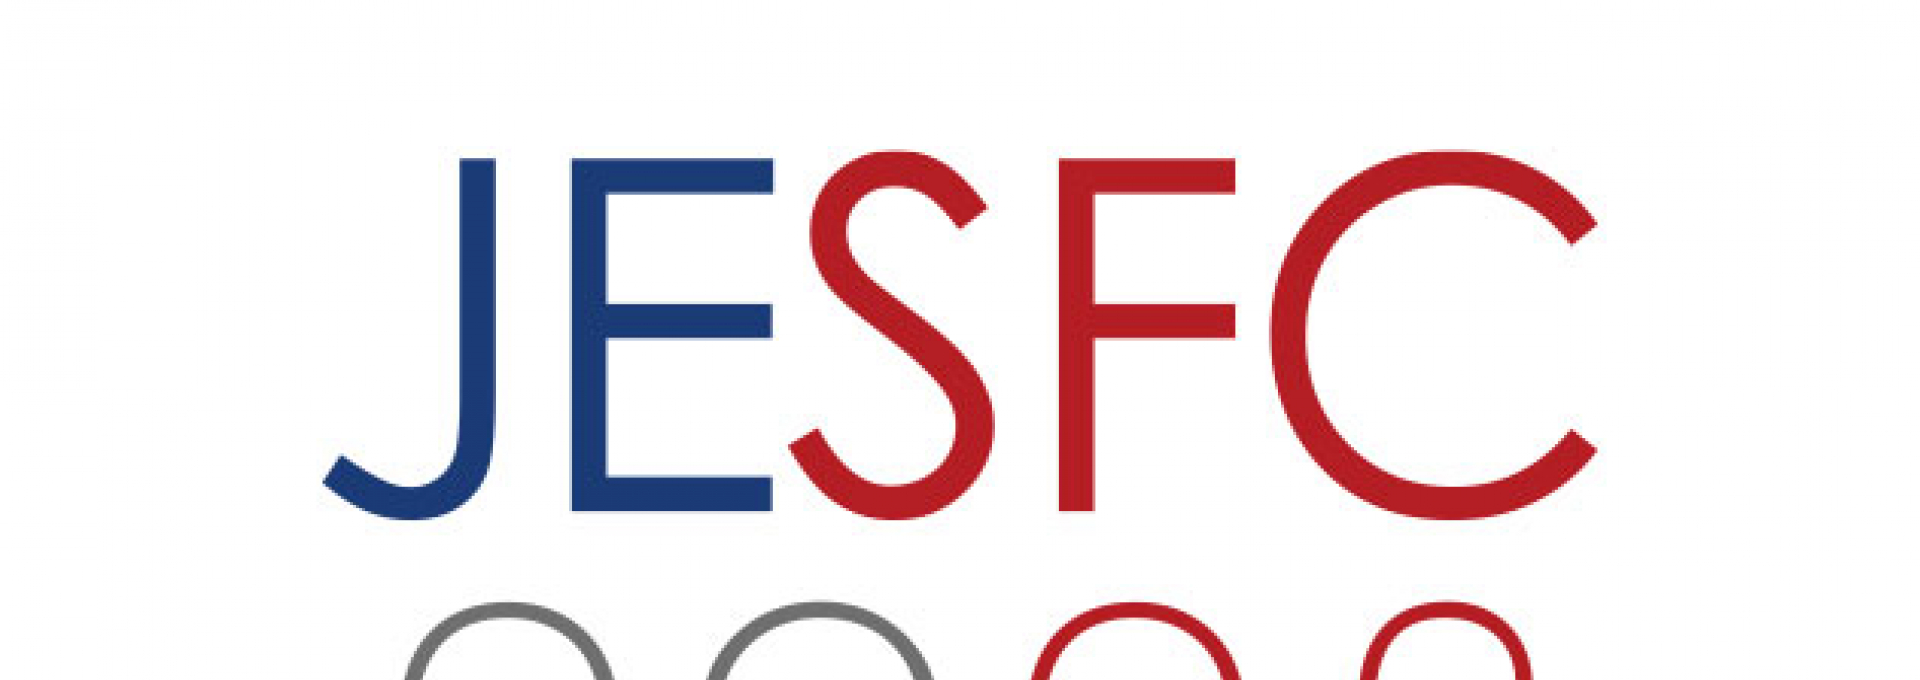 logo jesfc 2023